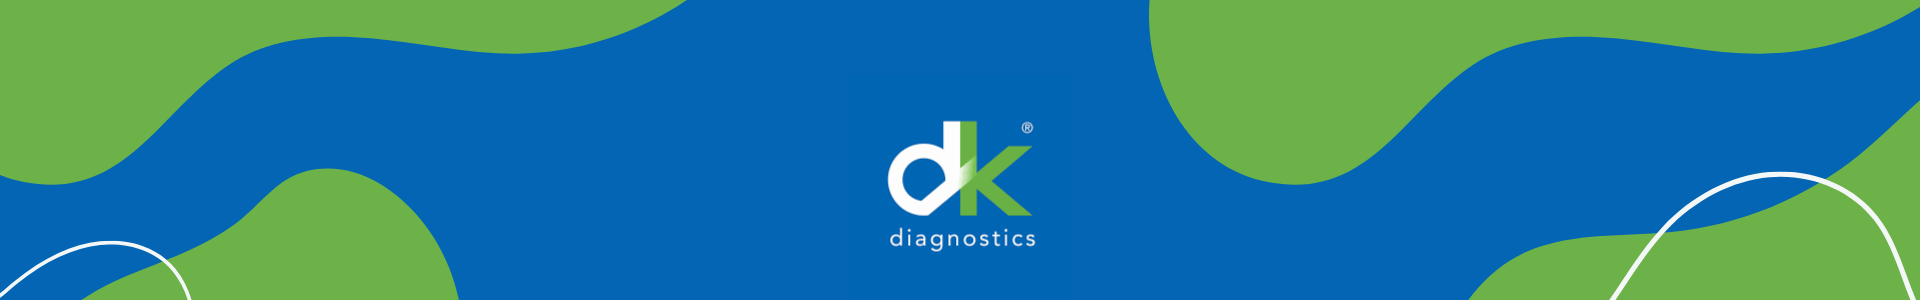 Marca Dk Diagnostics